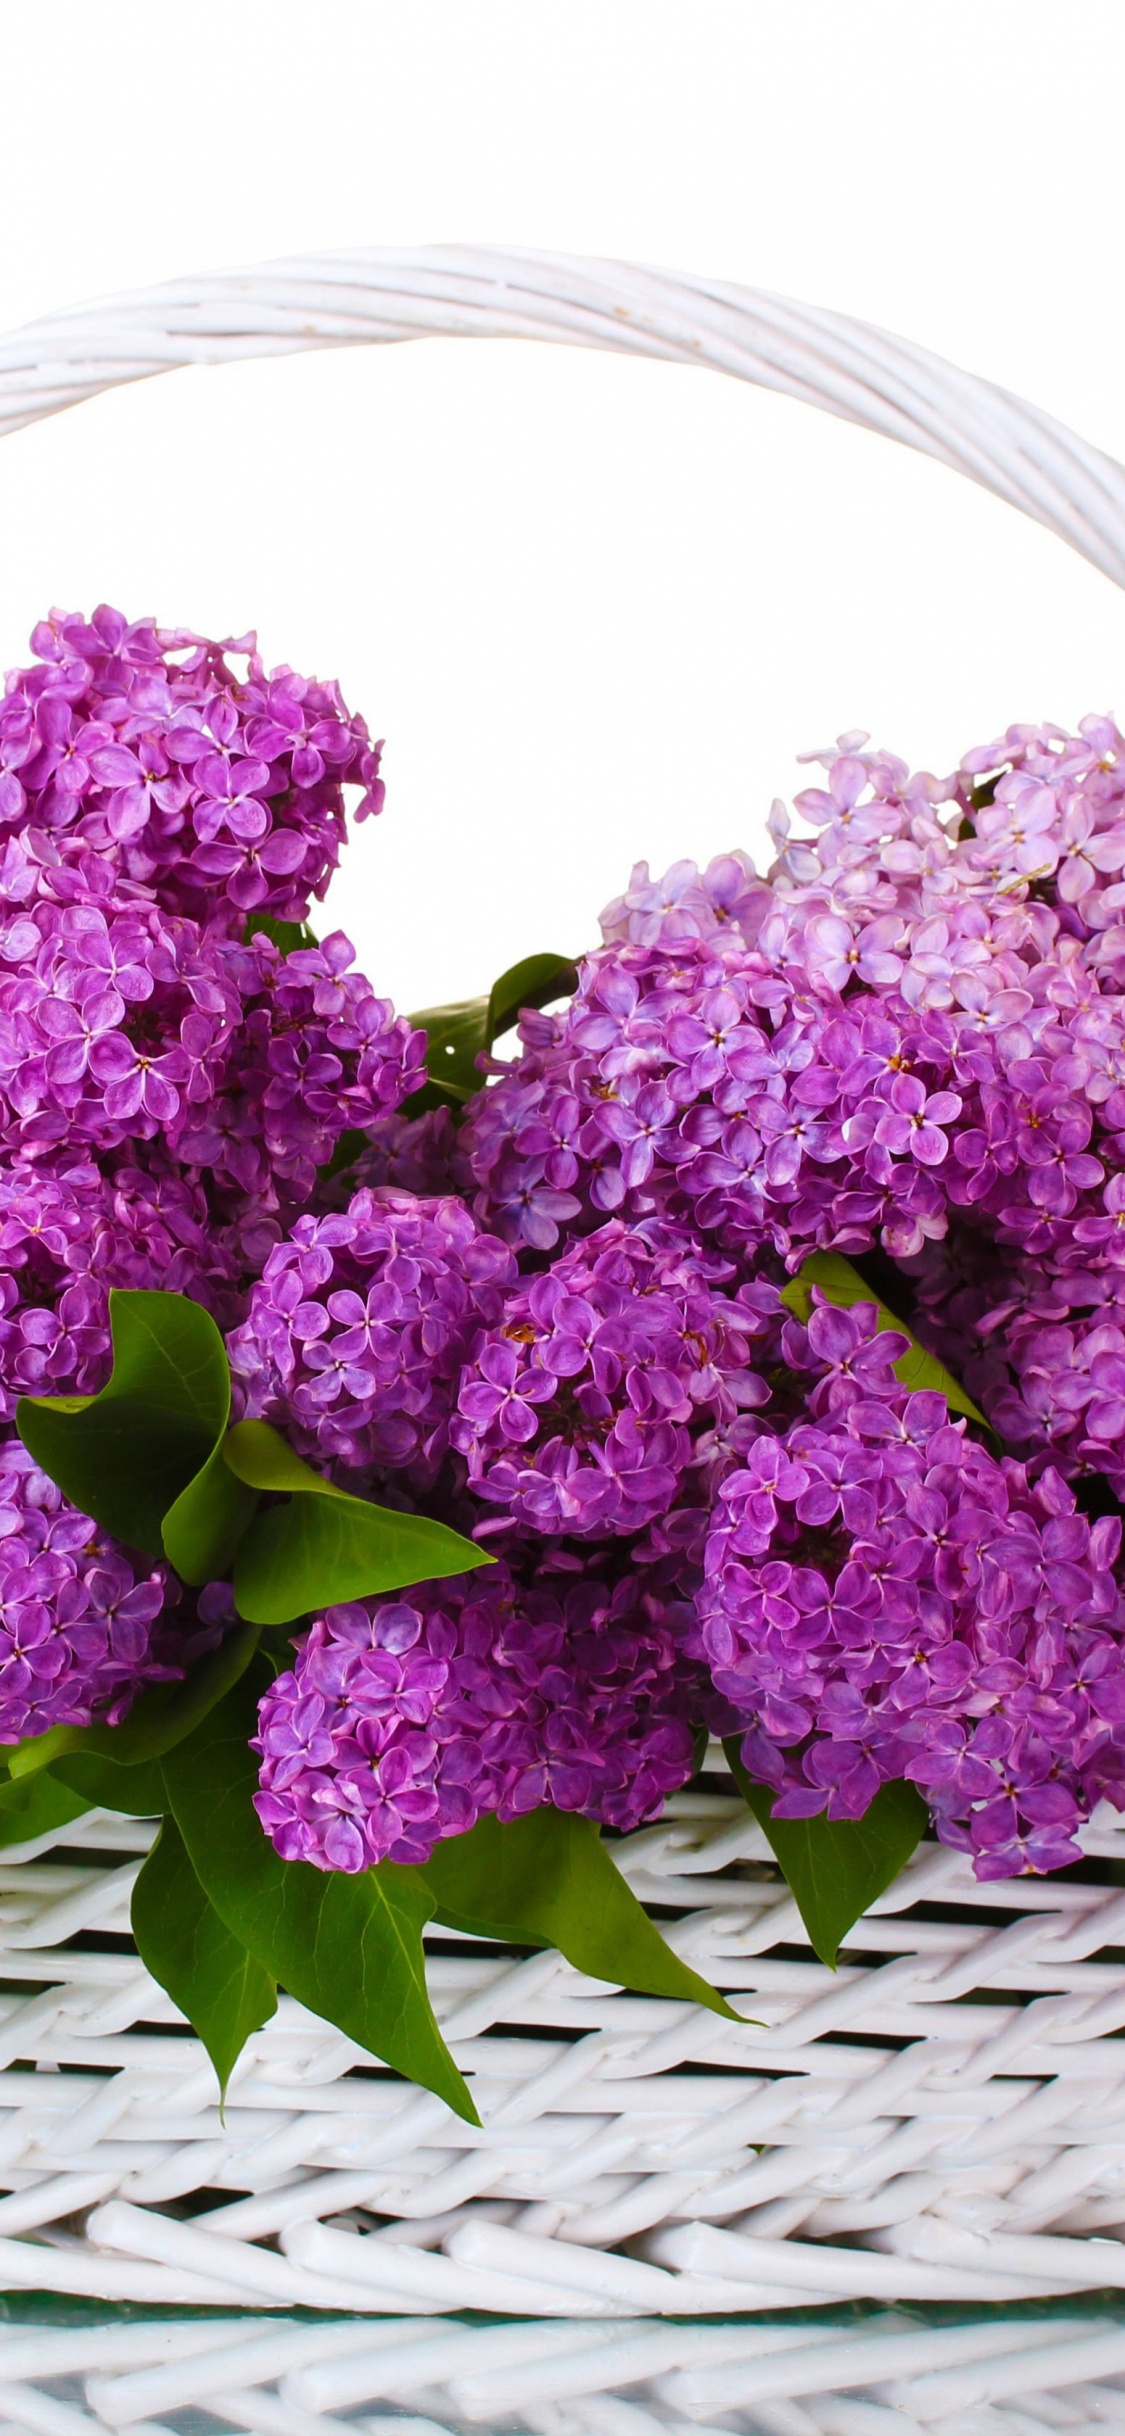 Purple Flowers on Woven Basket. Wallpaper in 1125x2436 Resolution